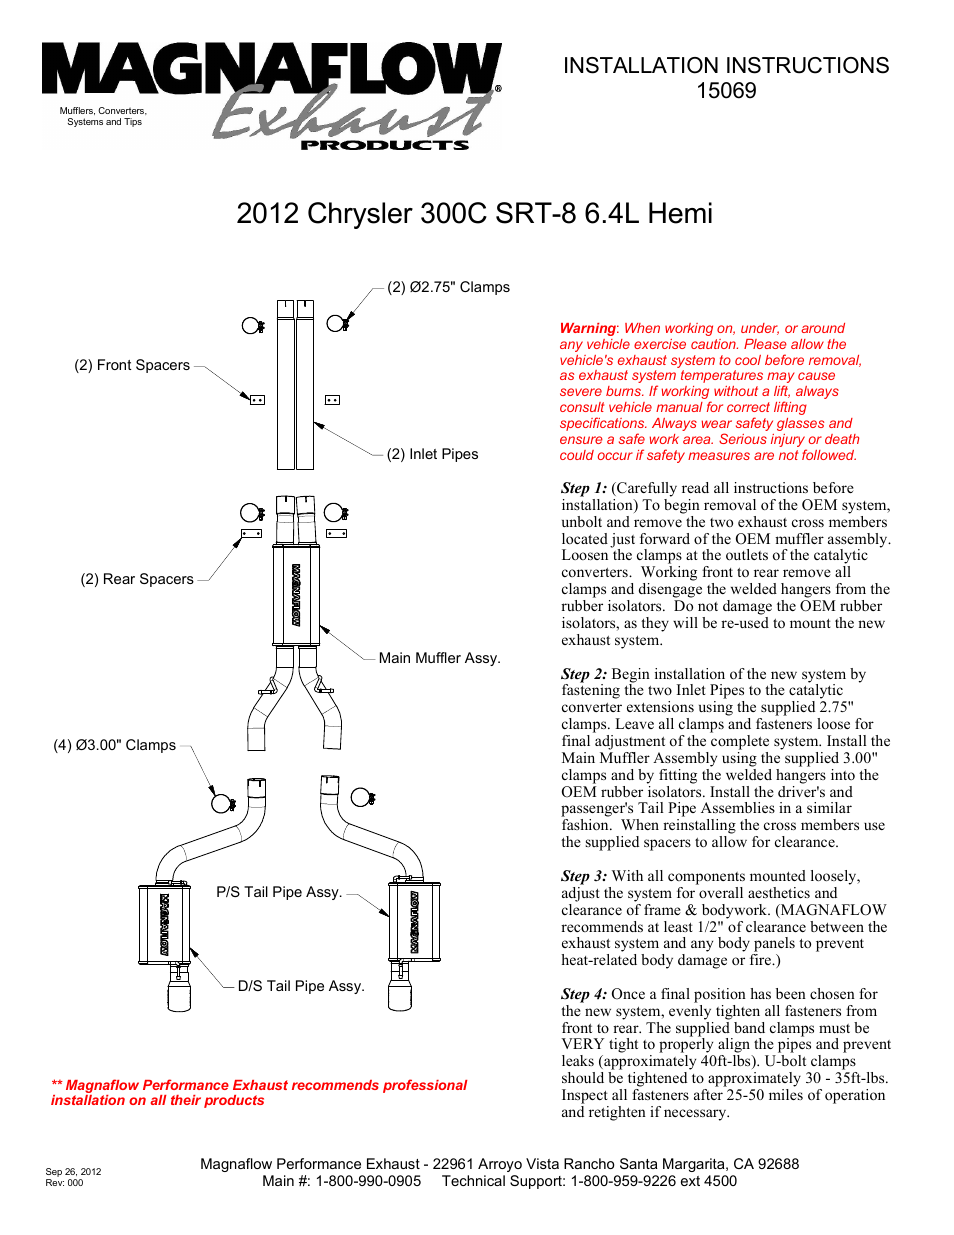 CHRYSLER 300C SRT-8 HEMI Stainless Cat-Back System PERFORMANCE EXHAUST